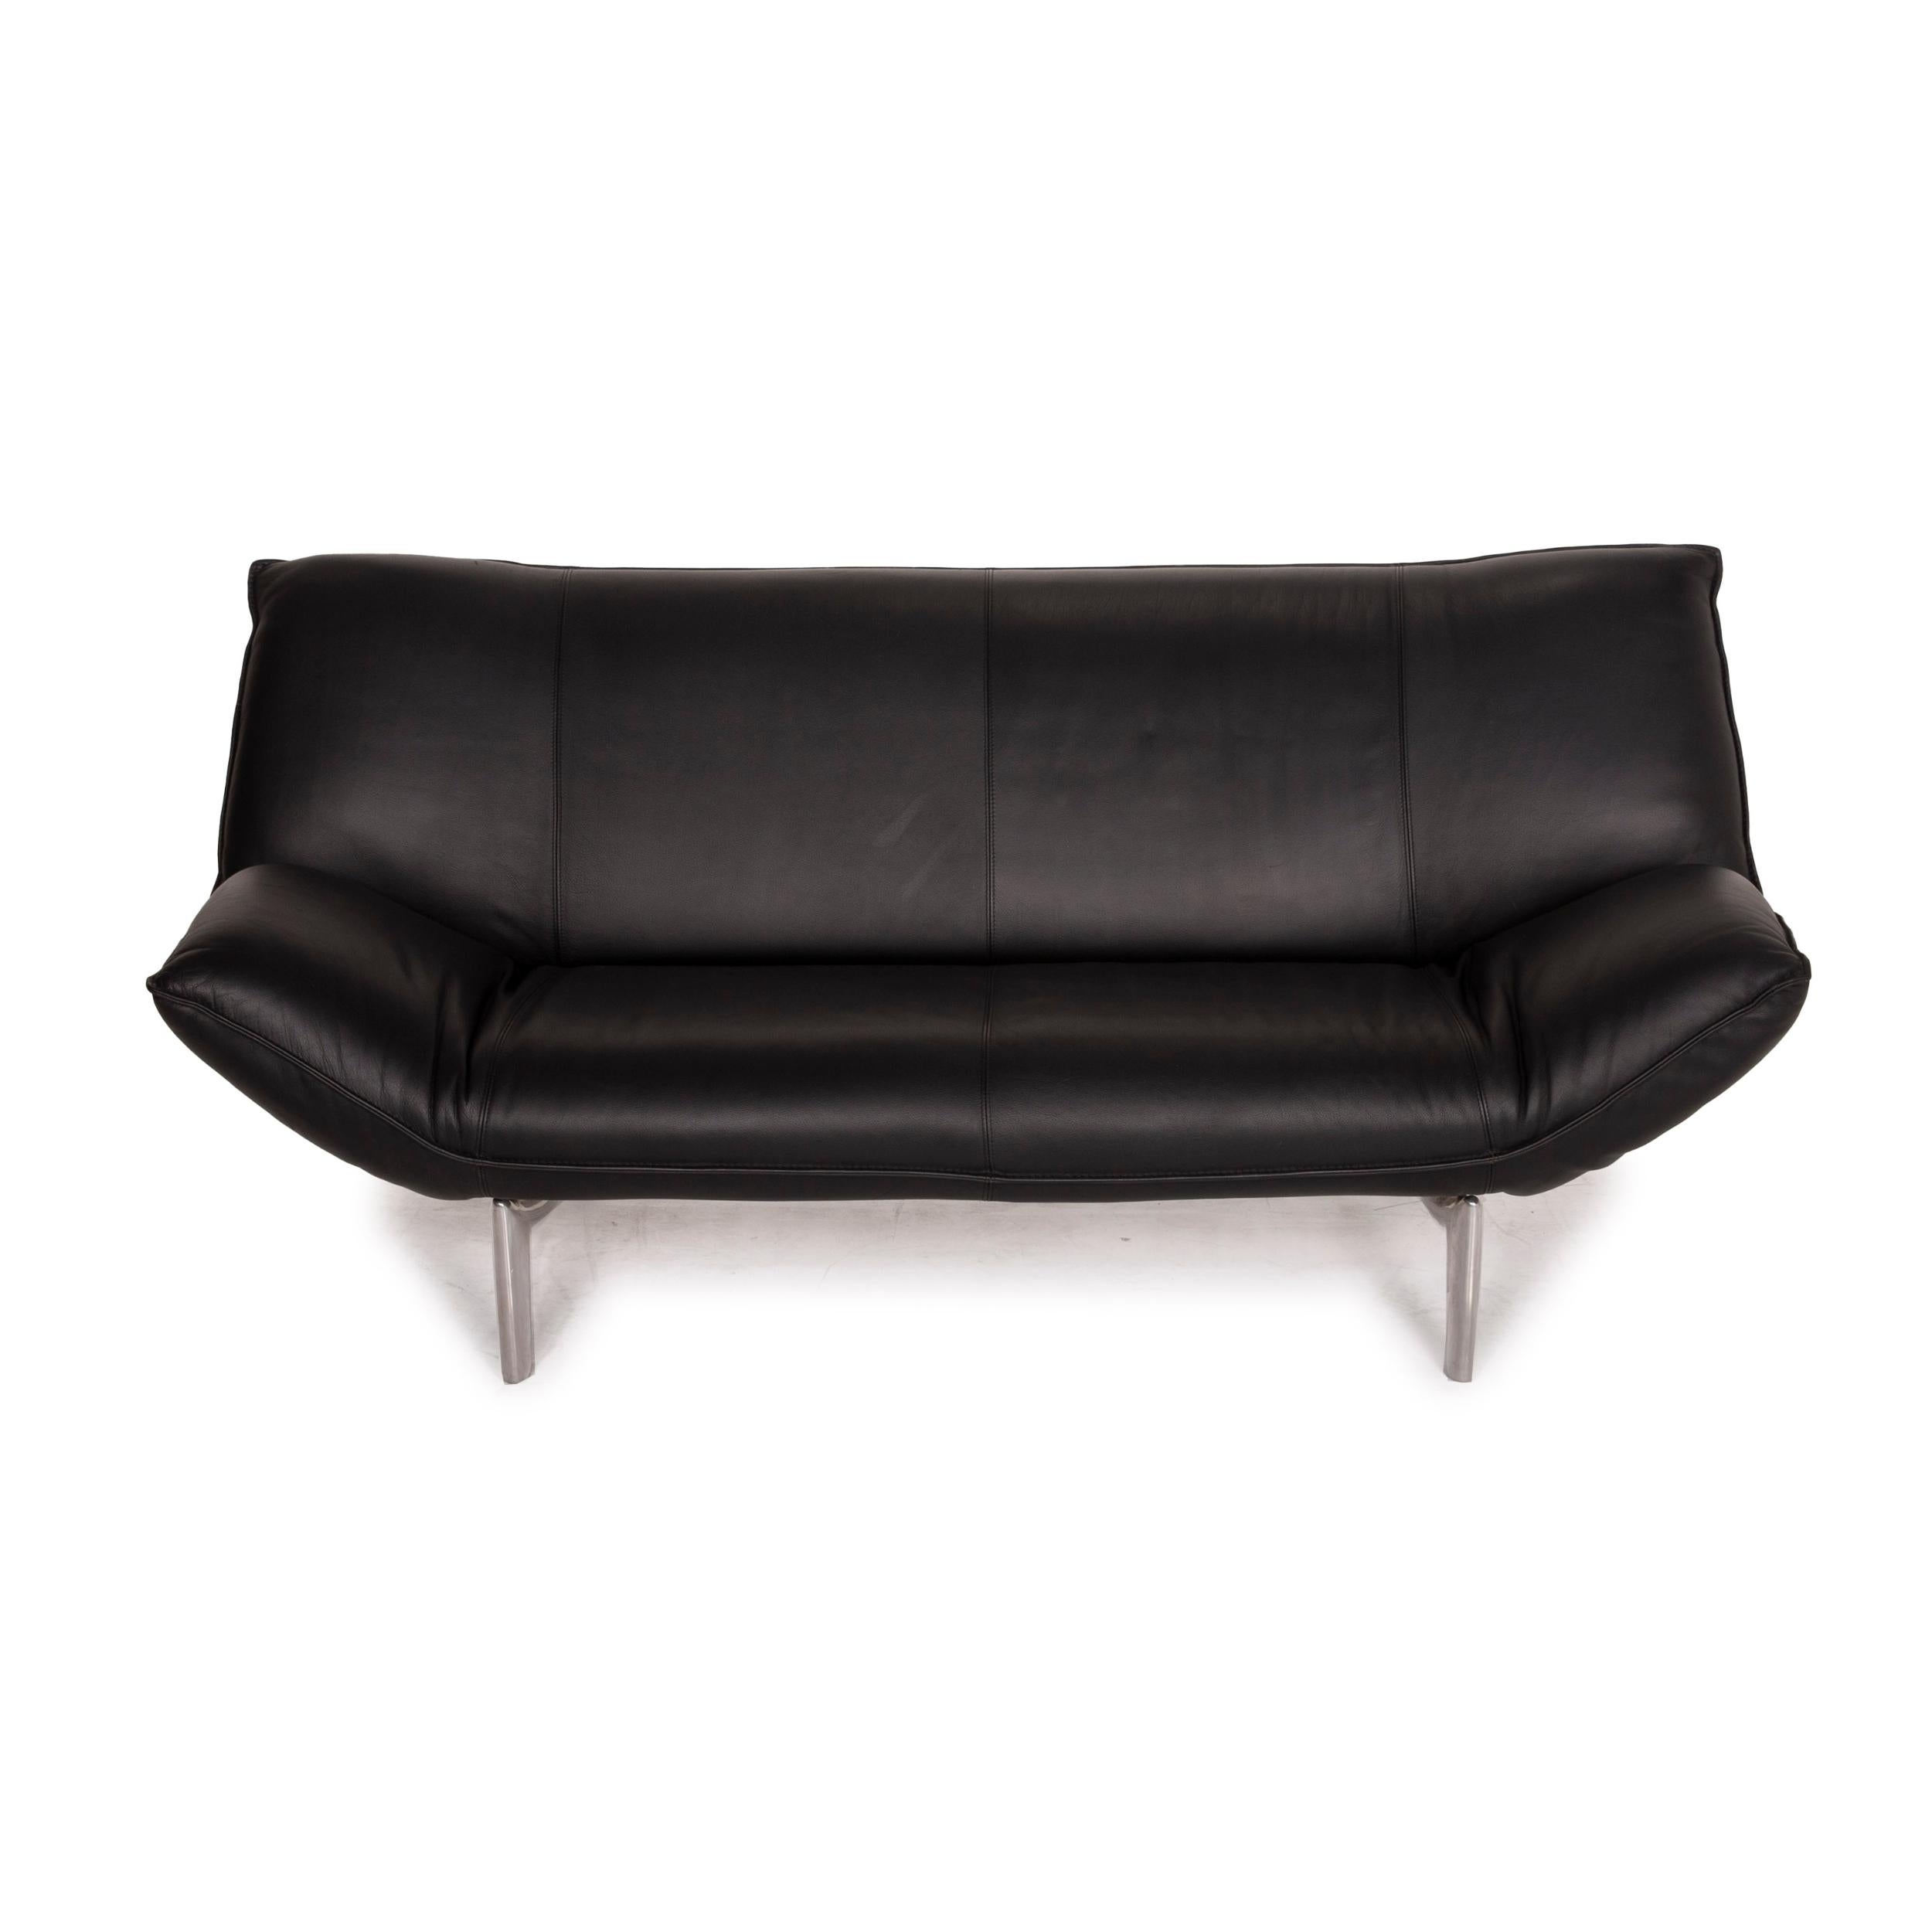 Leolux Tango Leather Sofa Black Two-Seater 1